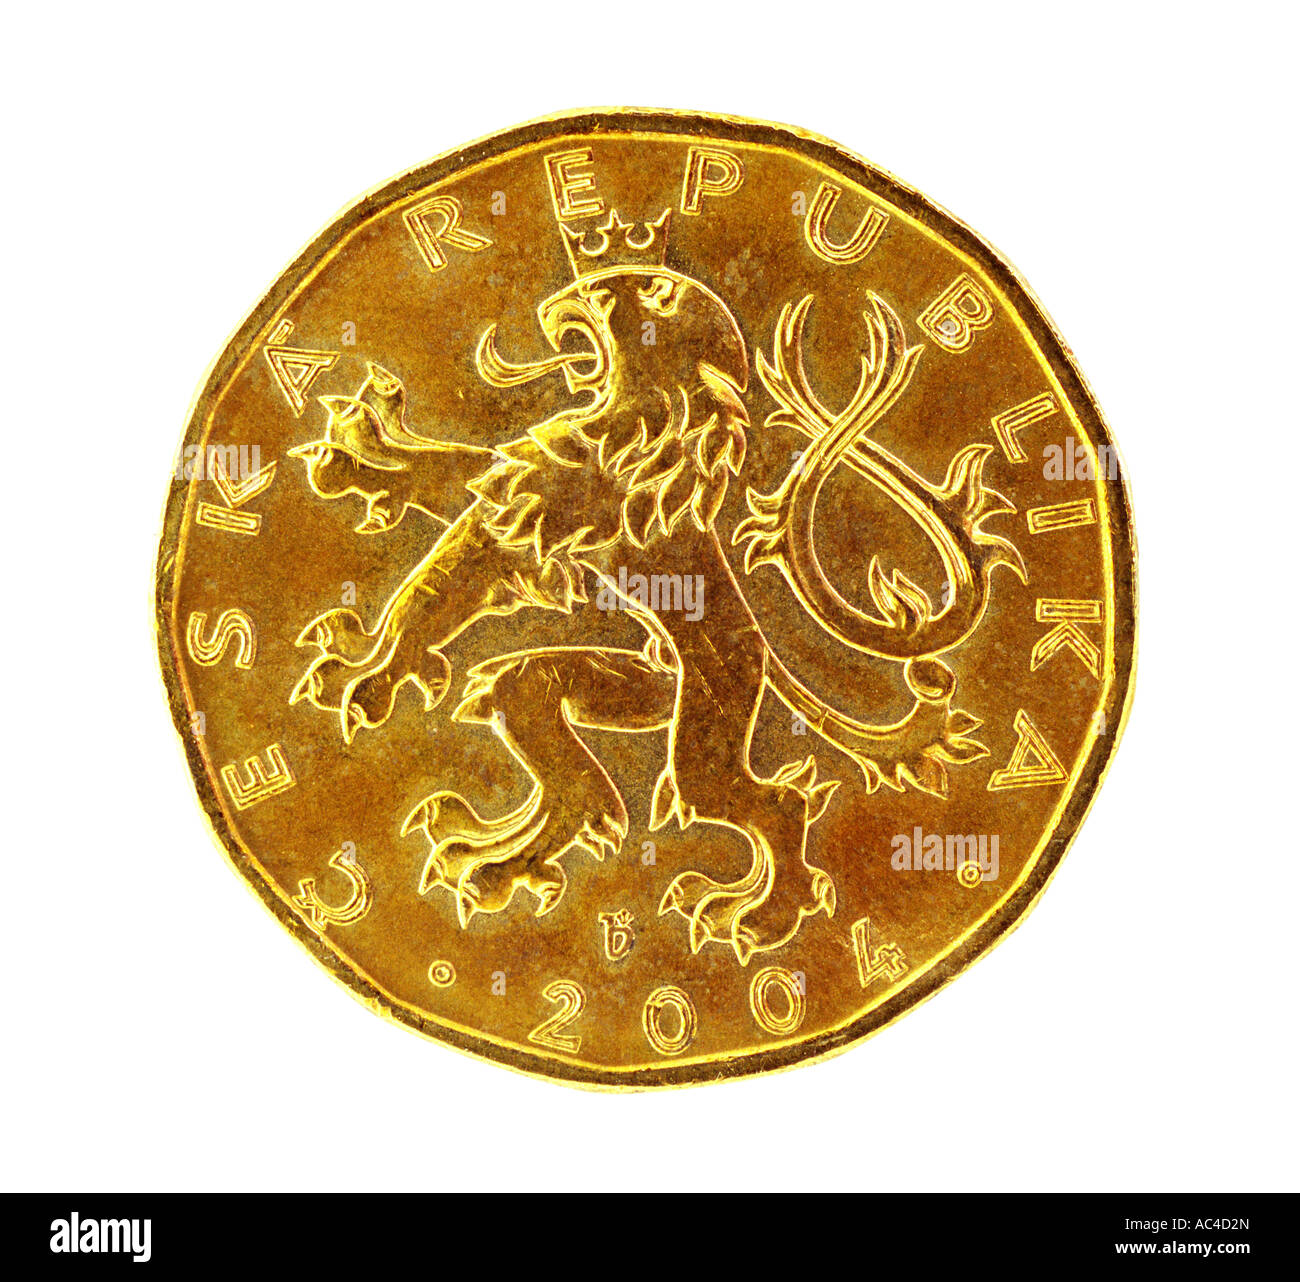 Czech 20 Kc coin Stock Photo